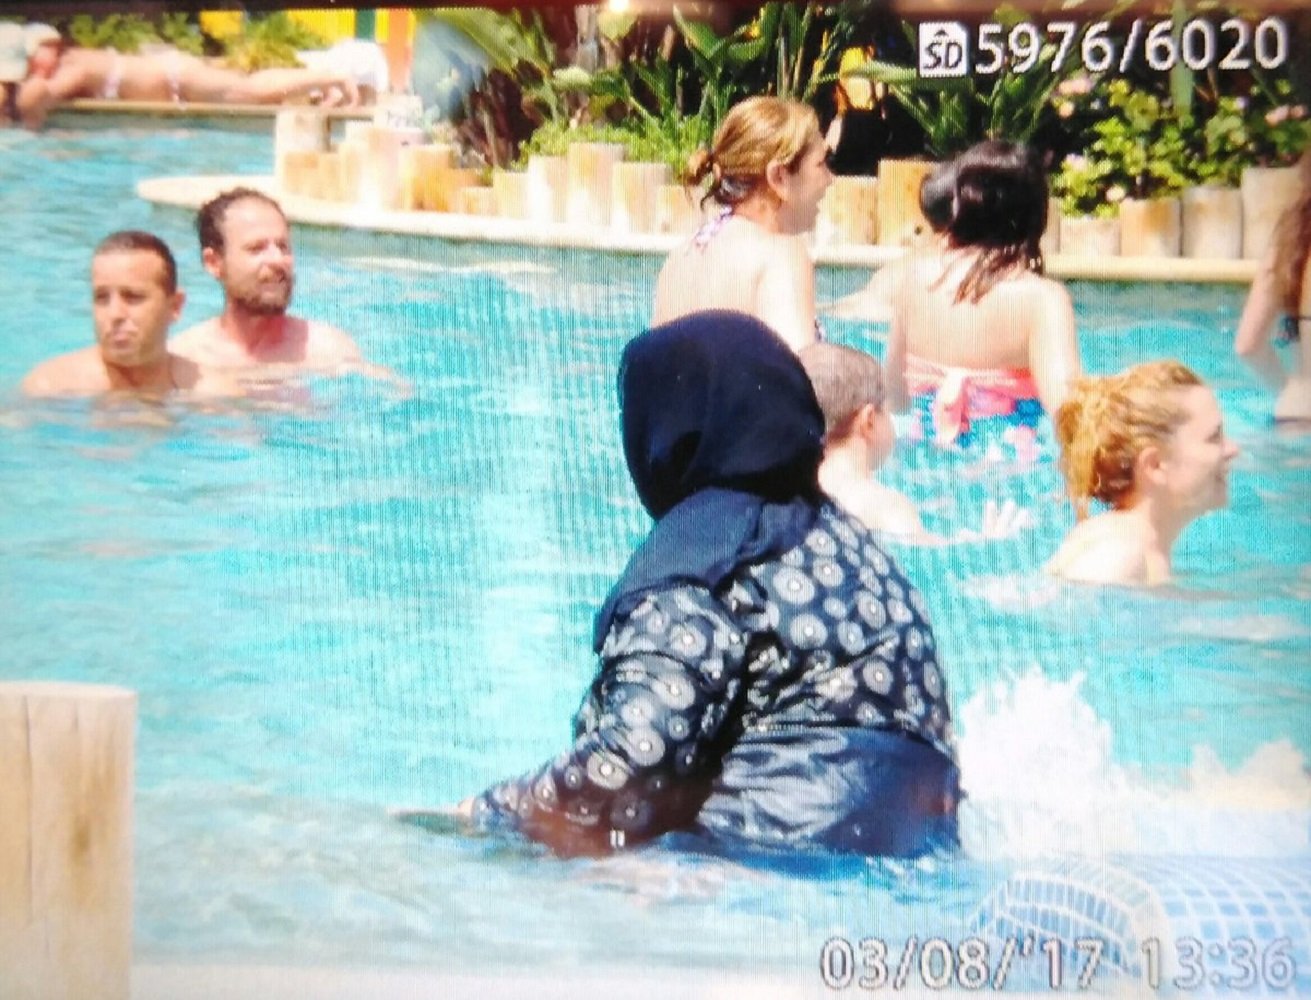 Polémica por la presencia de una mujer con velo en un parque acuático